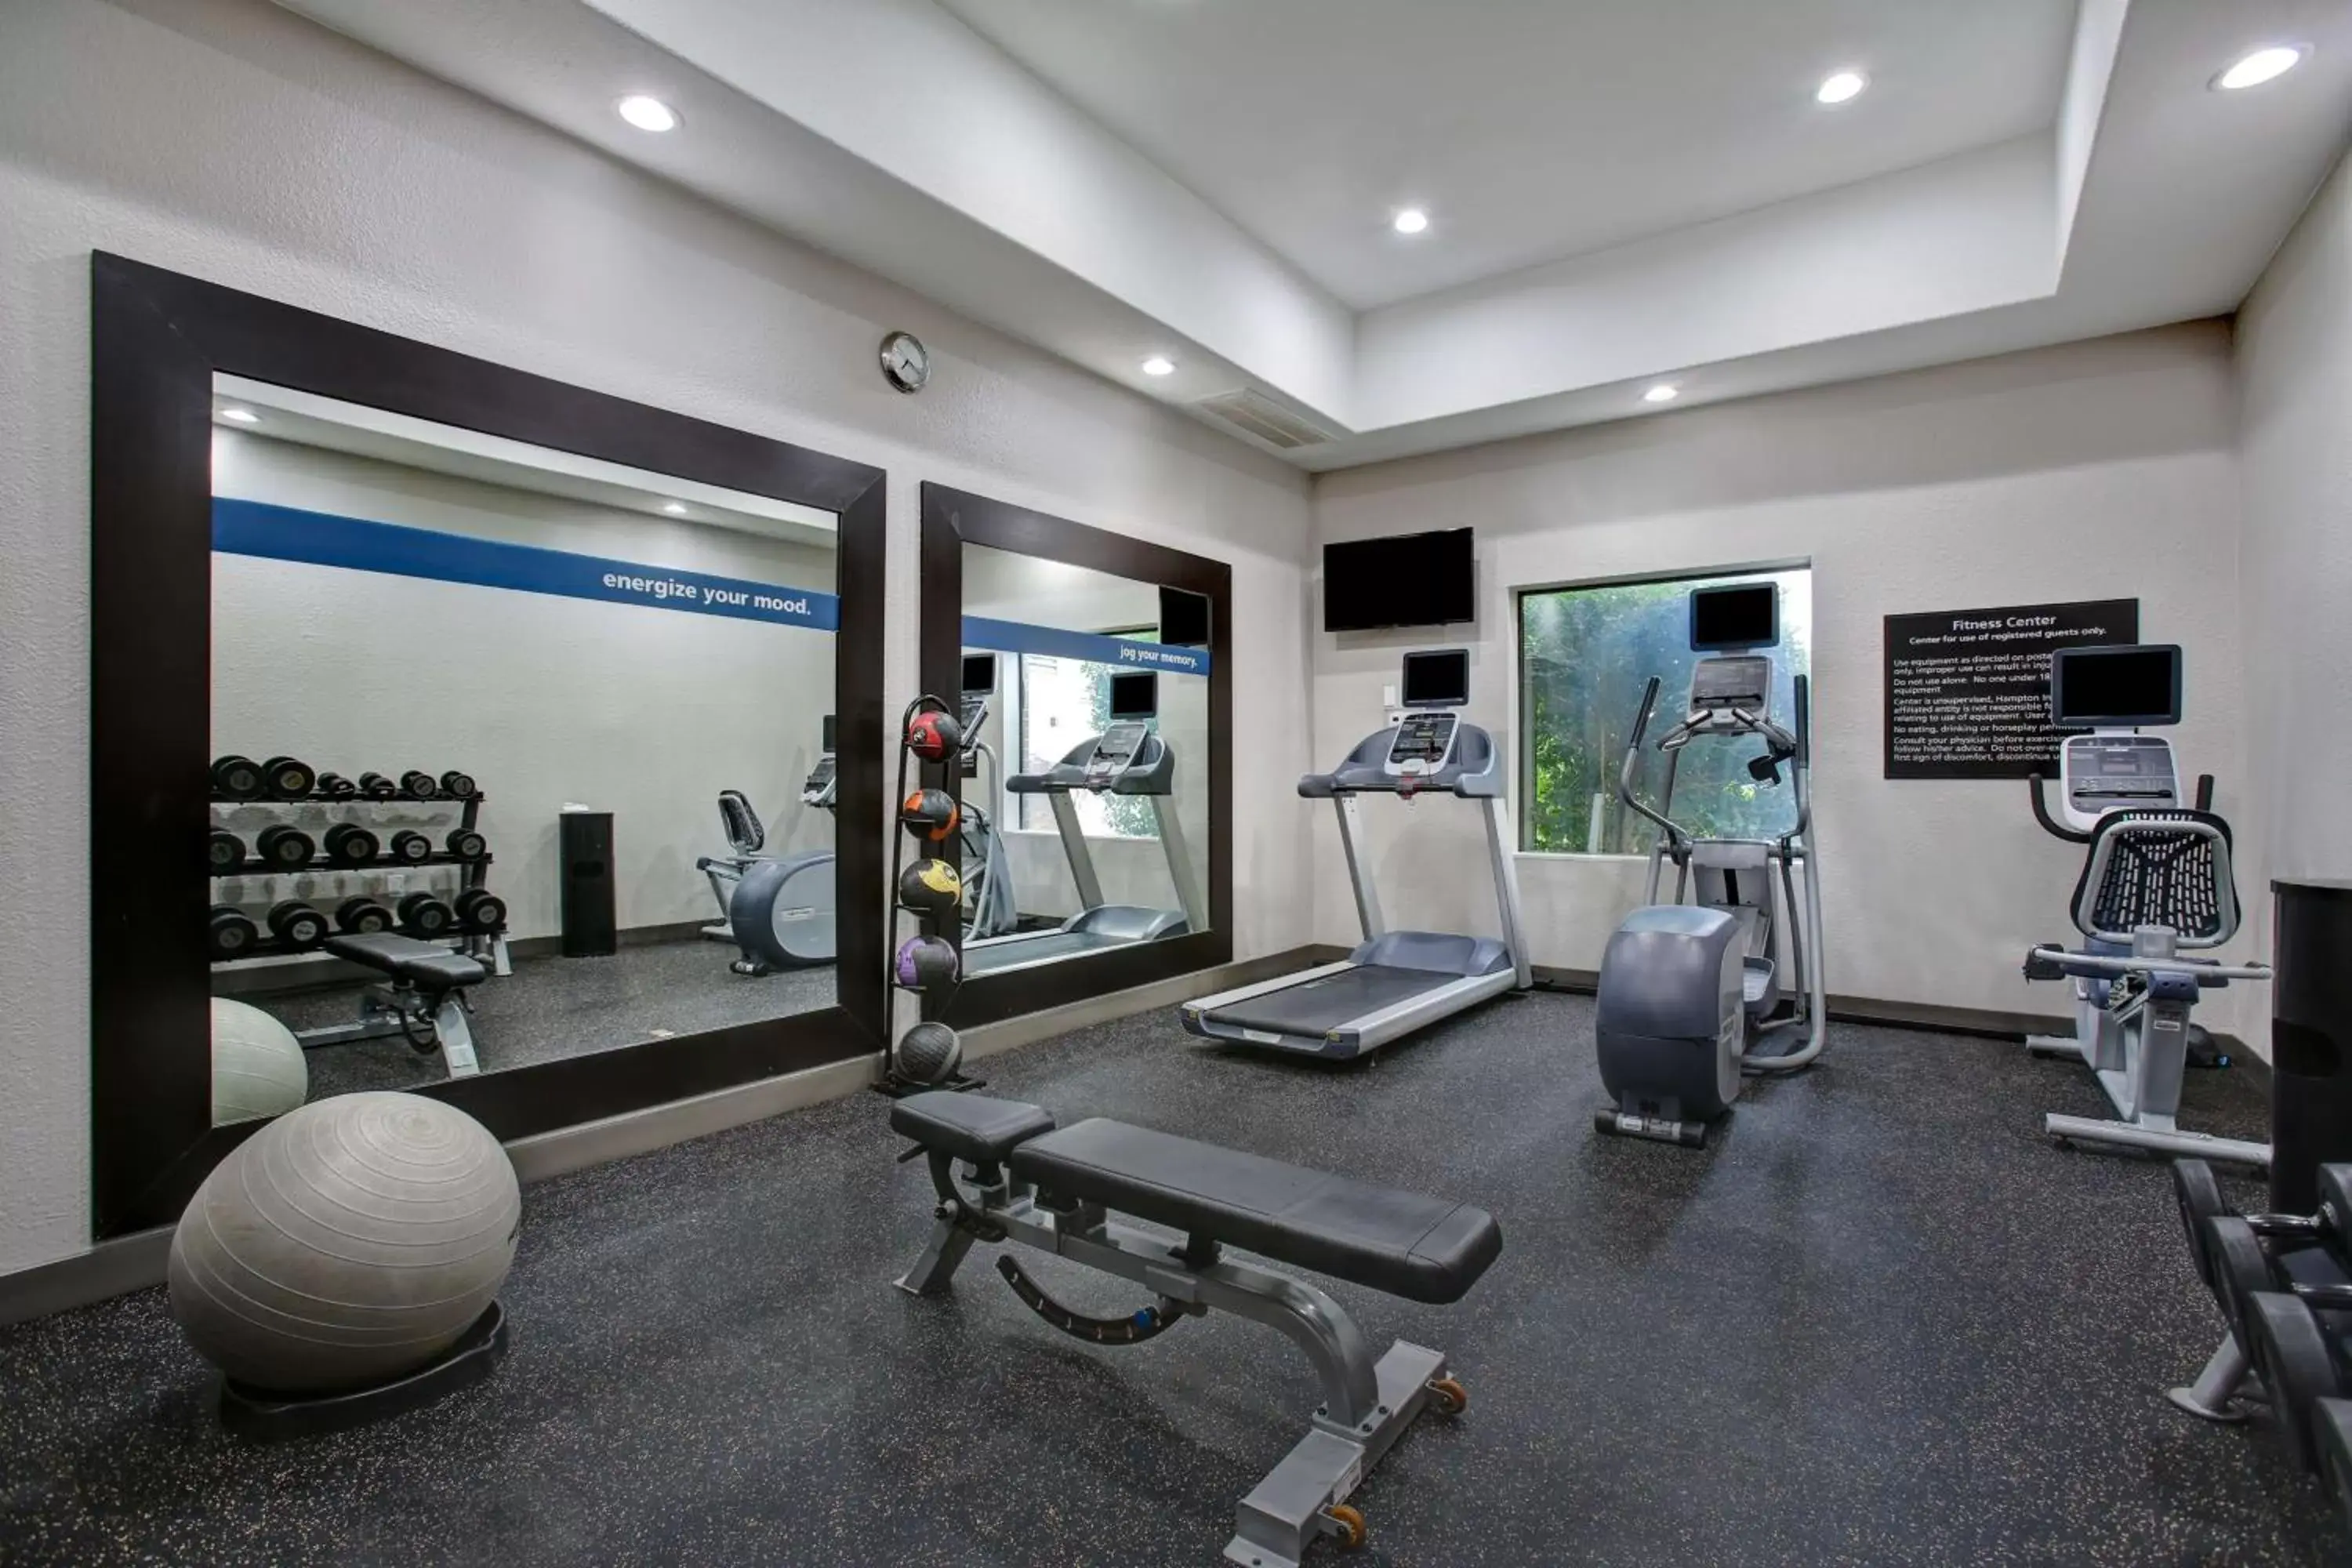 Fitness centre/facilities, Fitness Center/Facilities in Hampton Inn & Suites Dallas-DeSoto